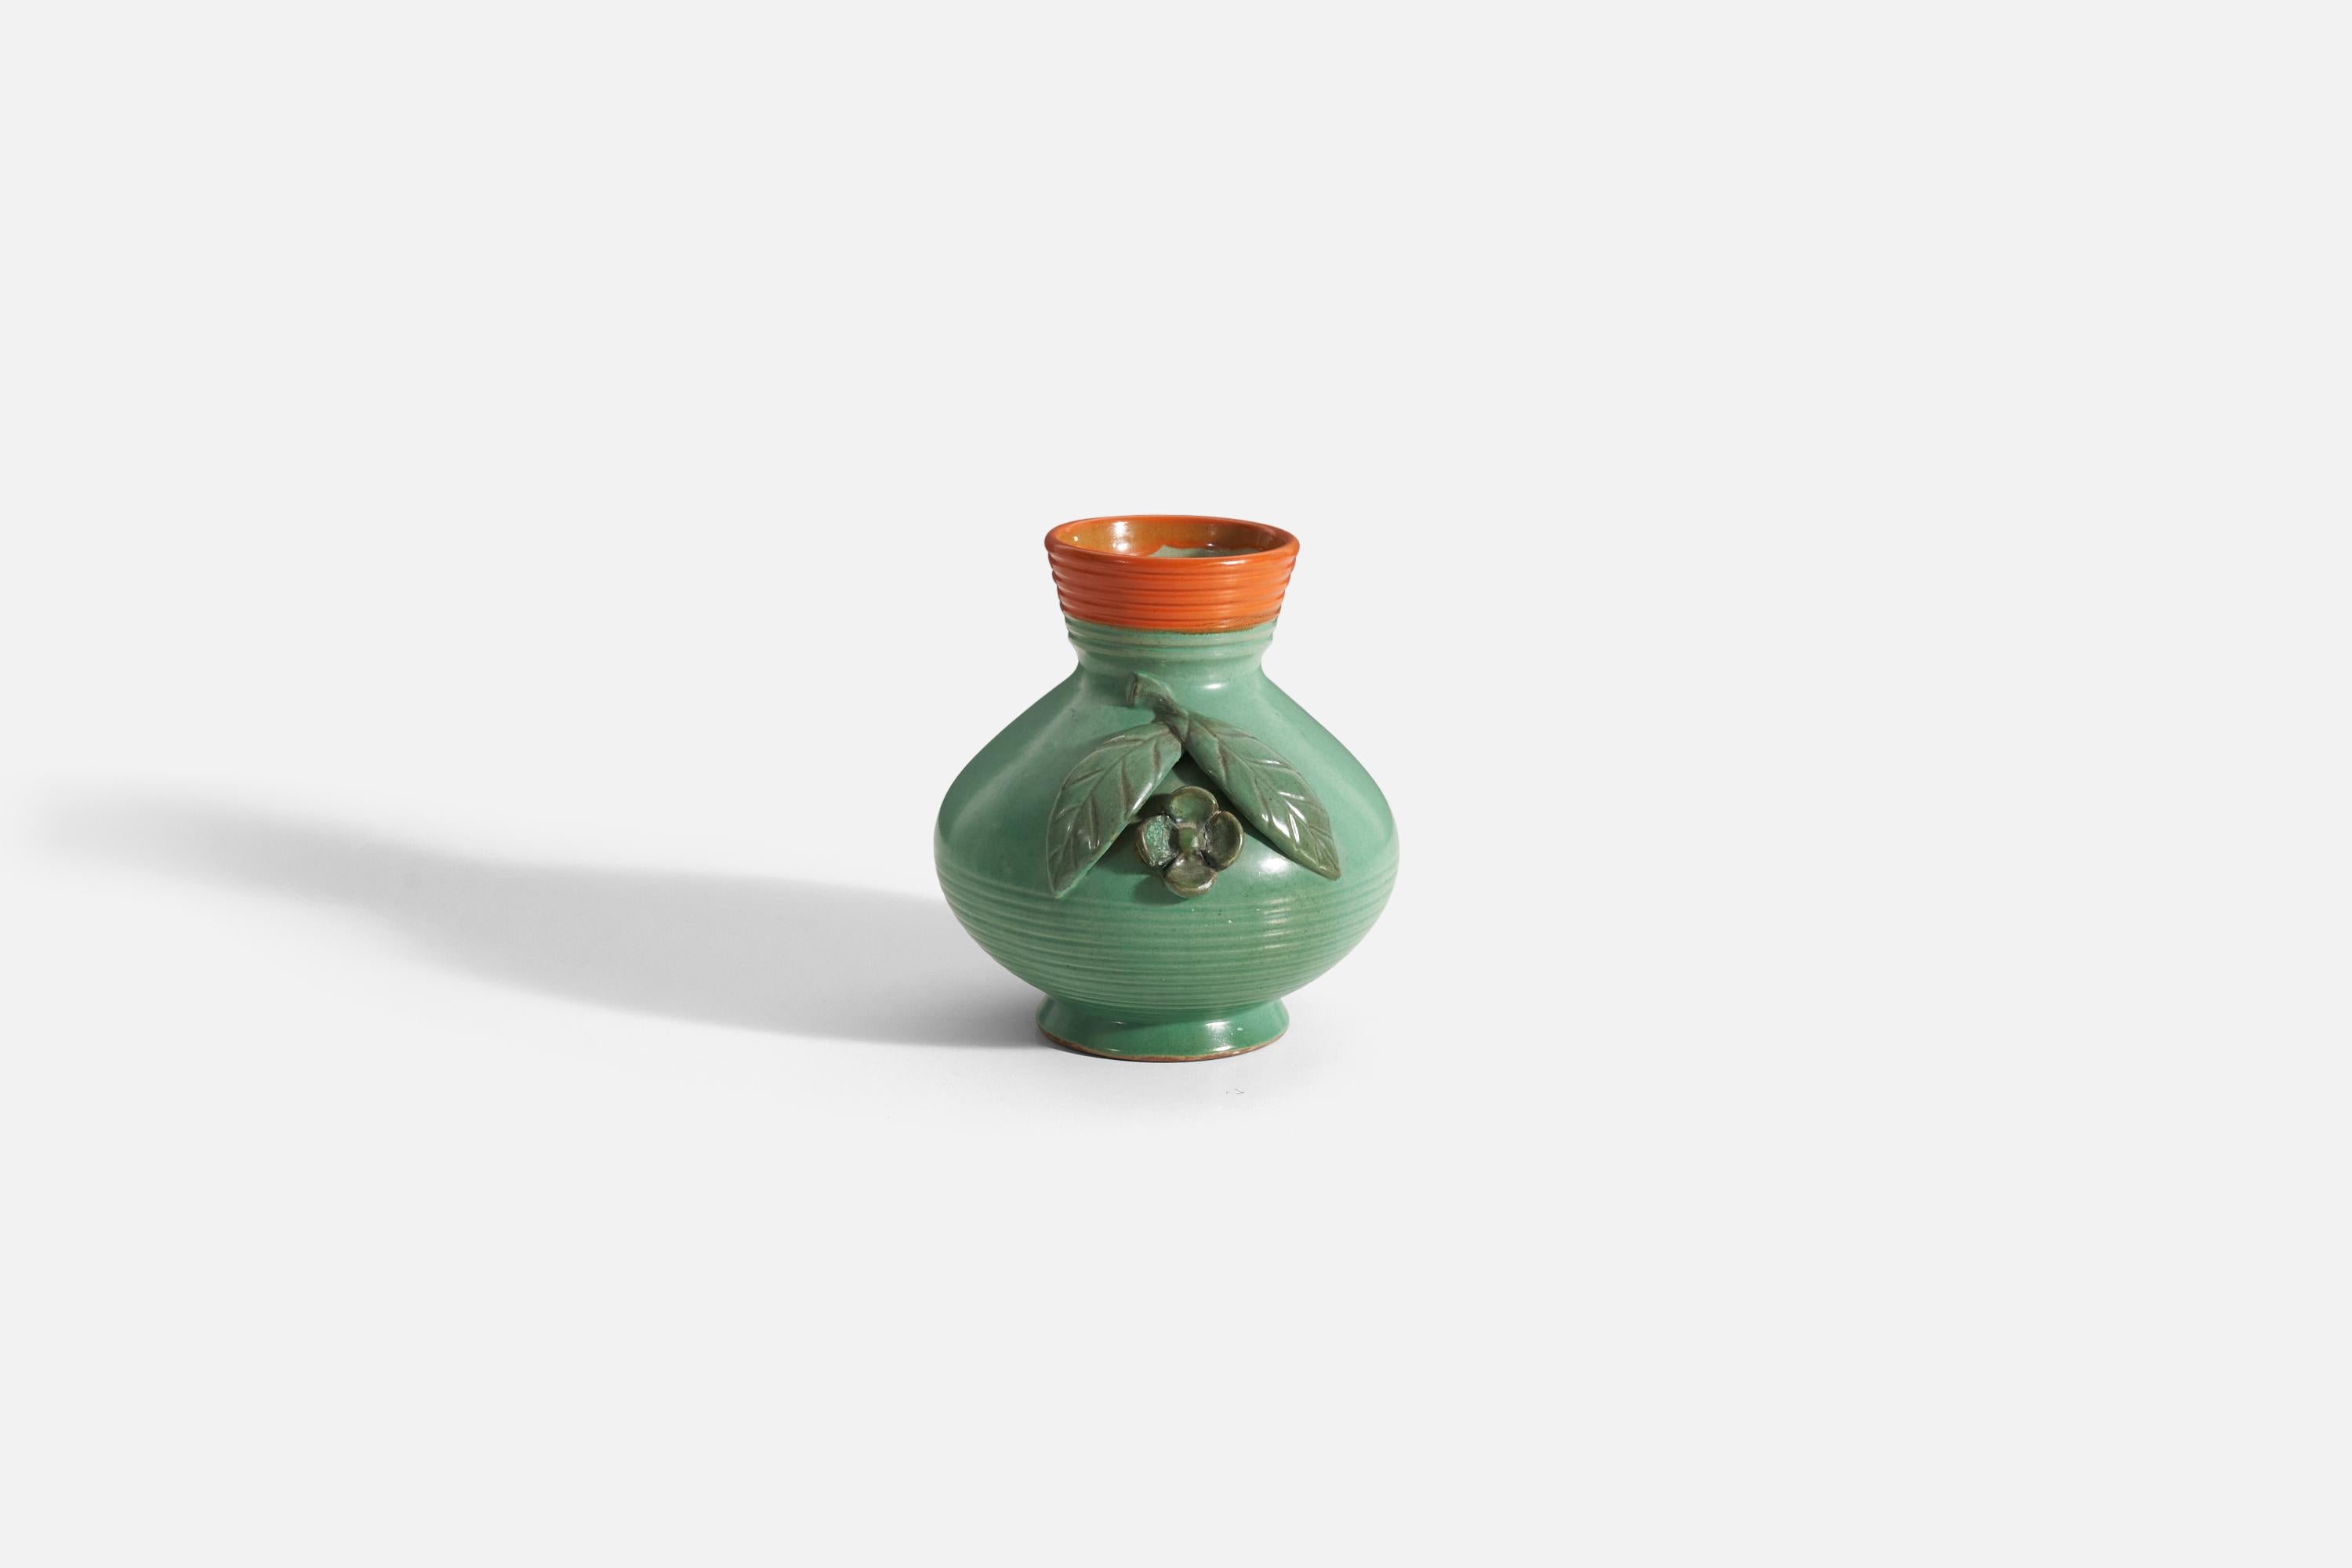 Vase en faïence émaillée vert et orange conçu et produit par Töreboda Keramik, Suède, vers les années 1940.
 